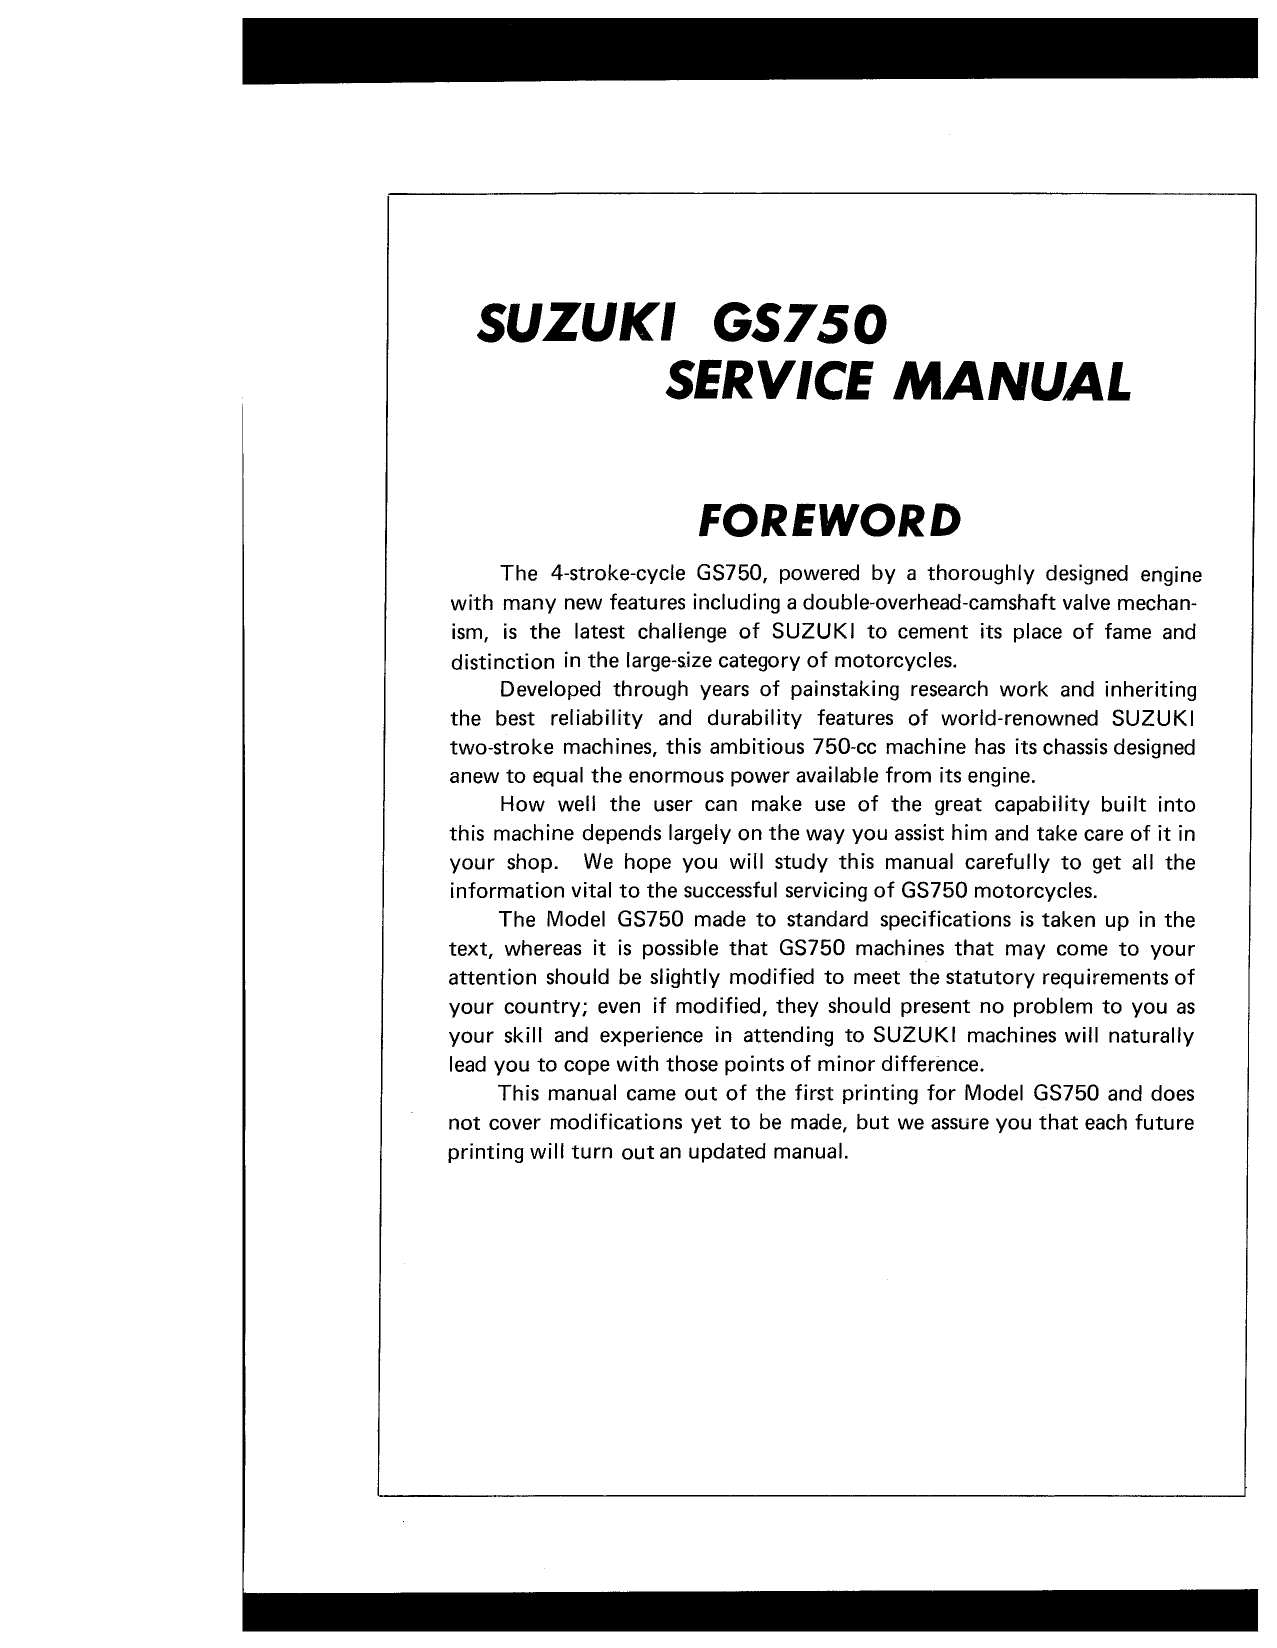 1976-1979 Suzuki GS750 service manual Preview image 2